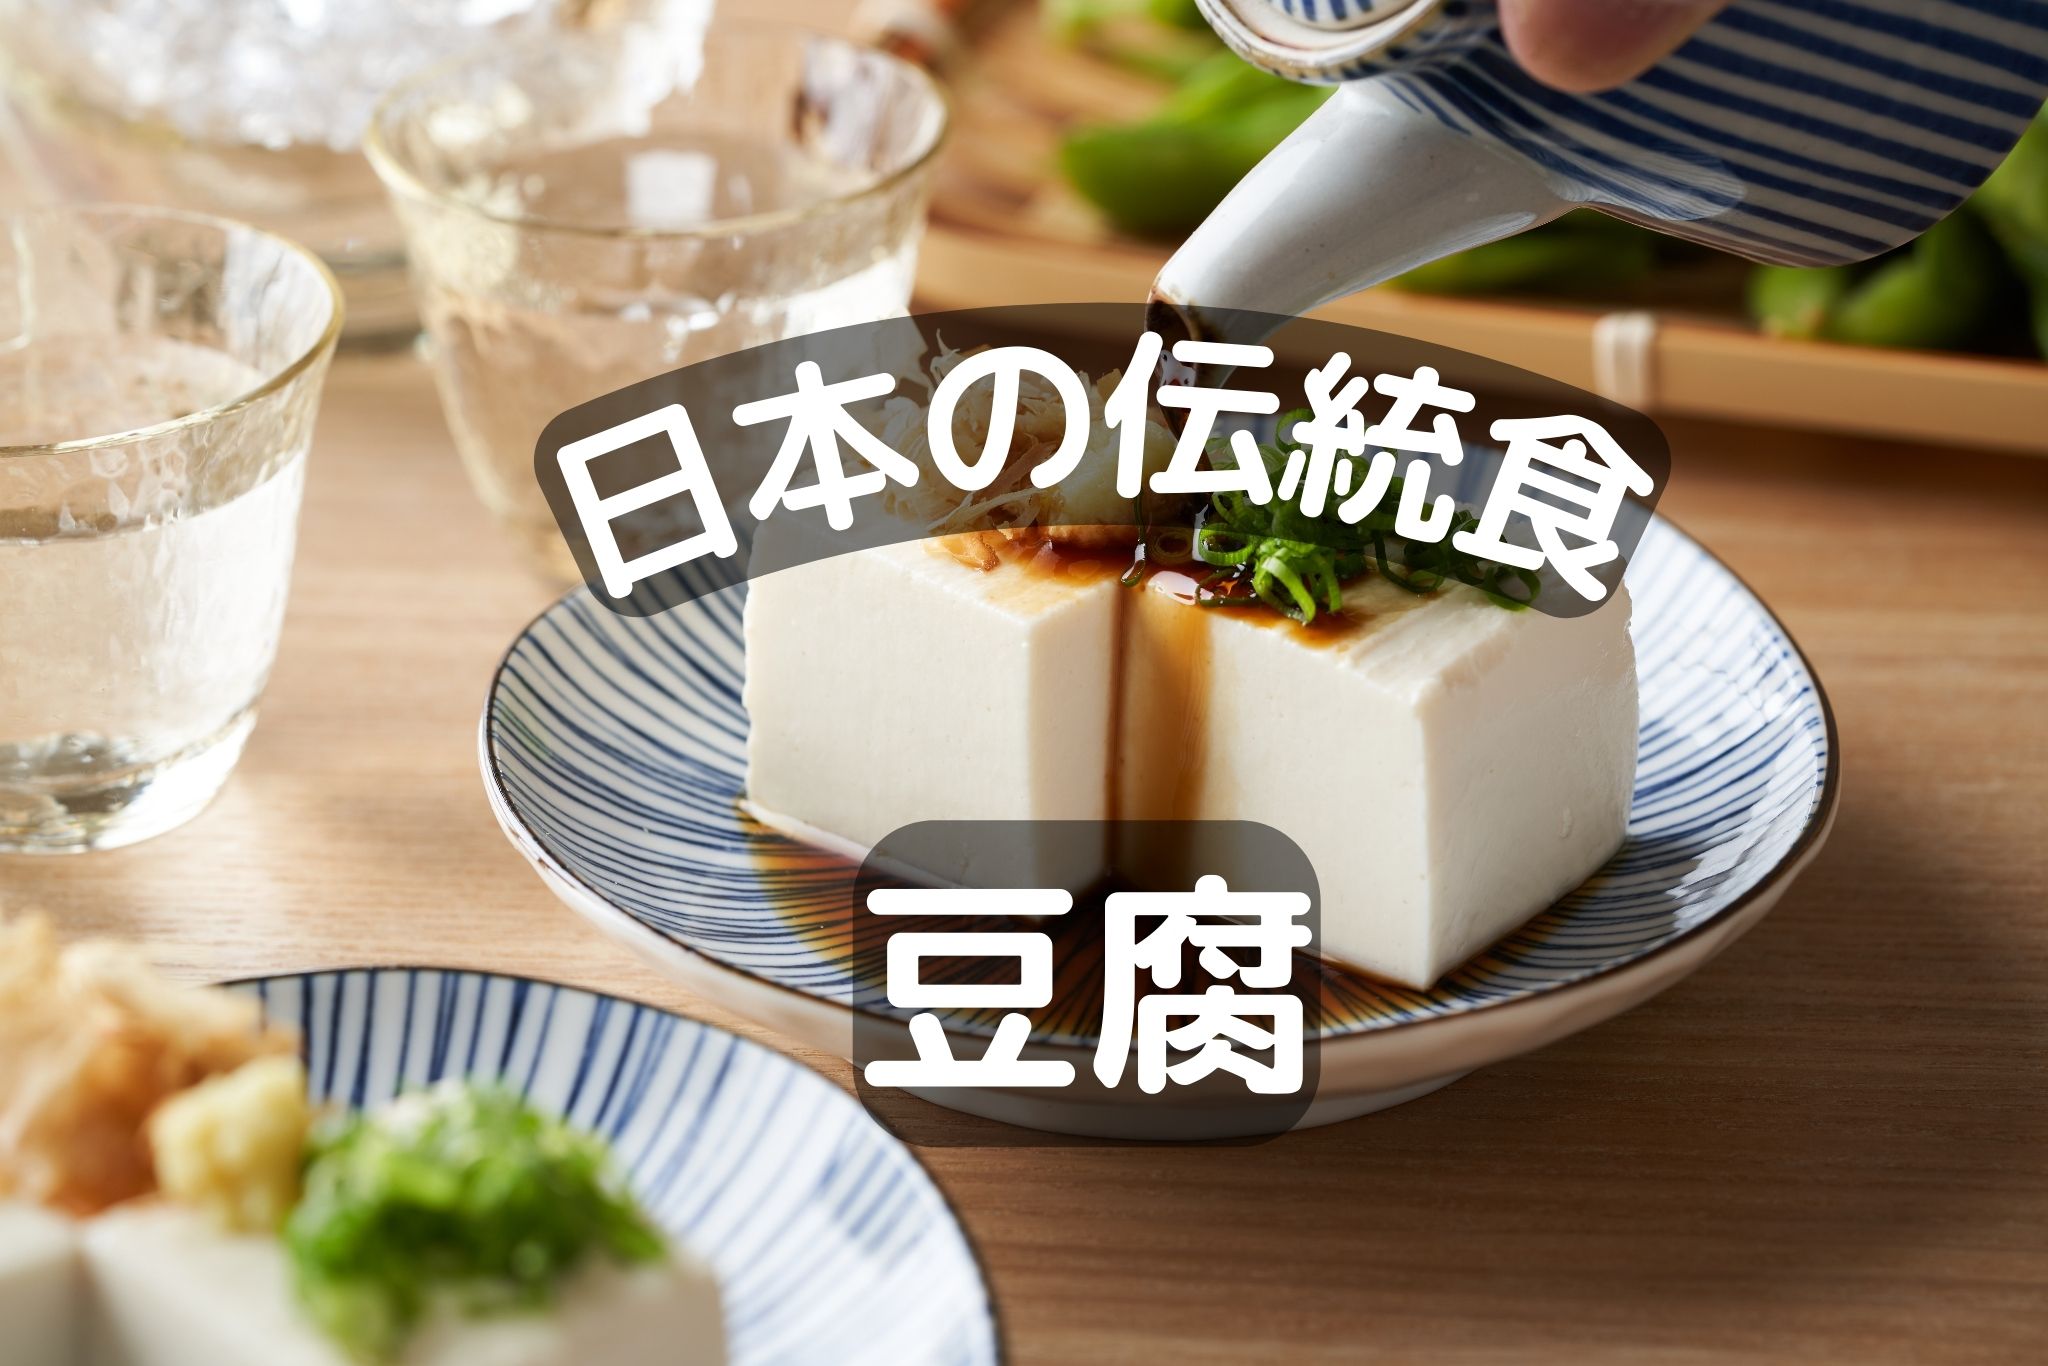 日本の伝統食「豆腐」 でも意外に知らない豆腐の真実